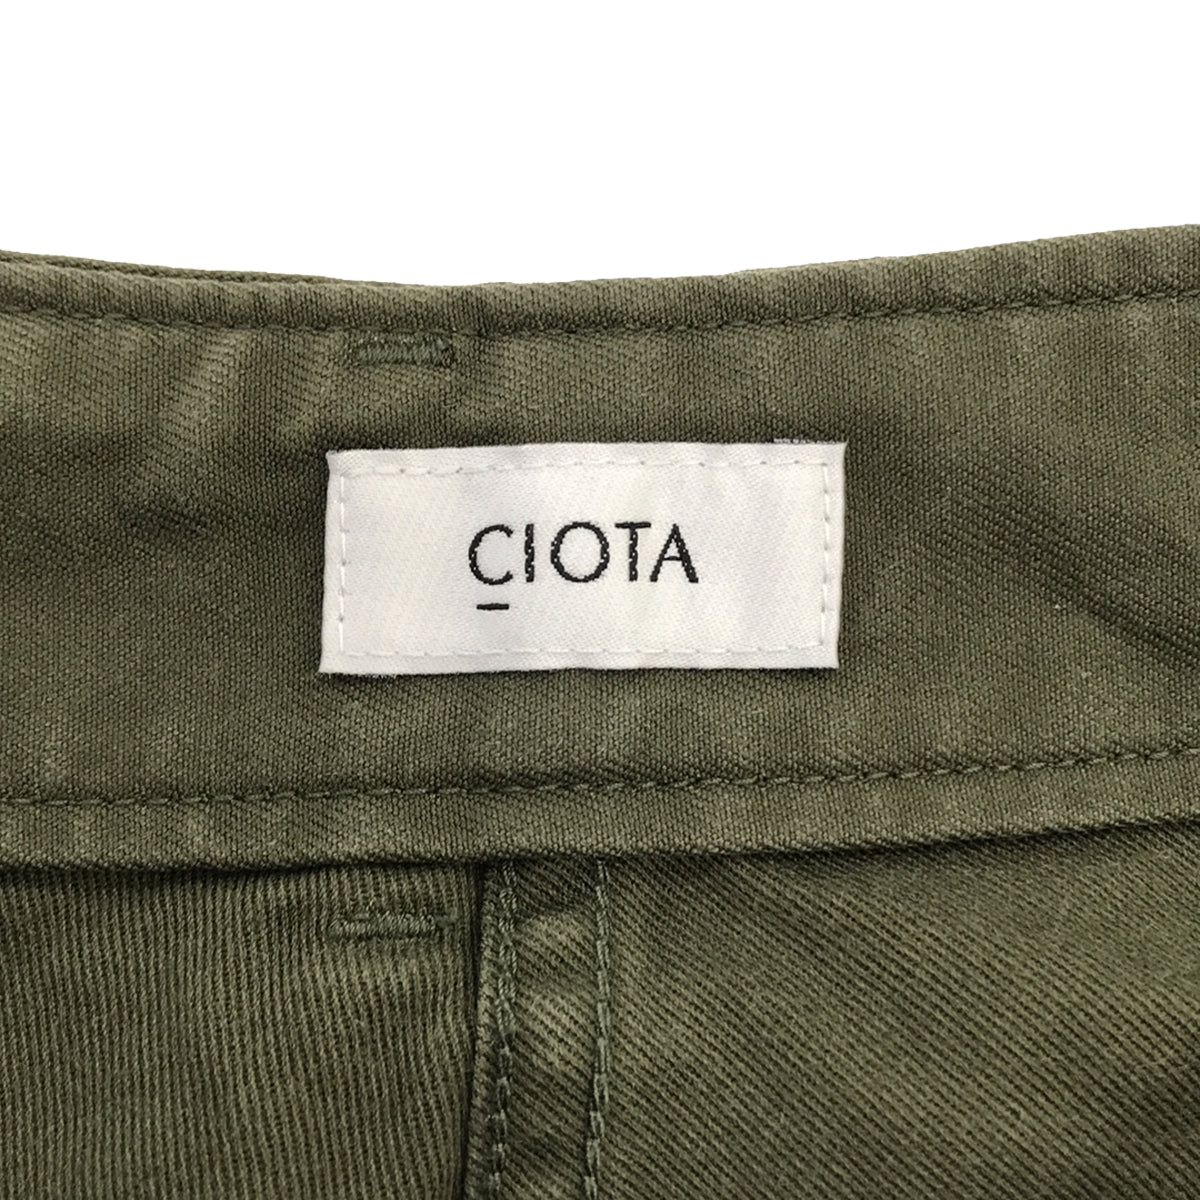 CIOTA / シオタ | スビンコットンバックサテンベイカーパンツ